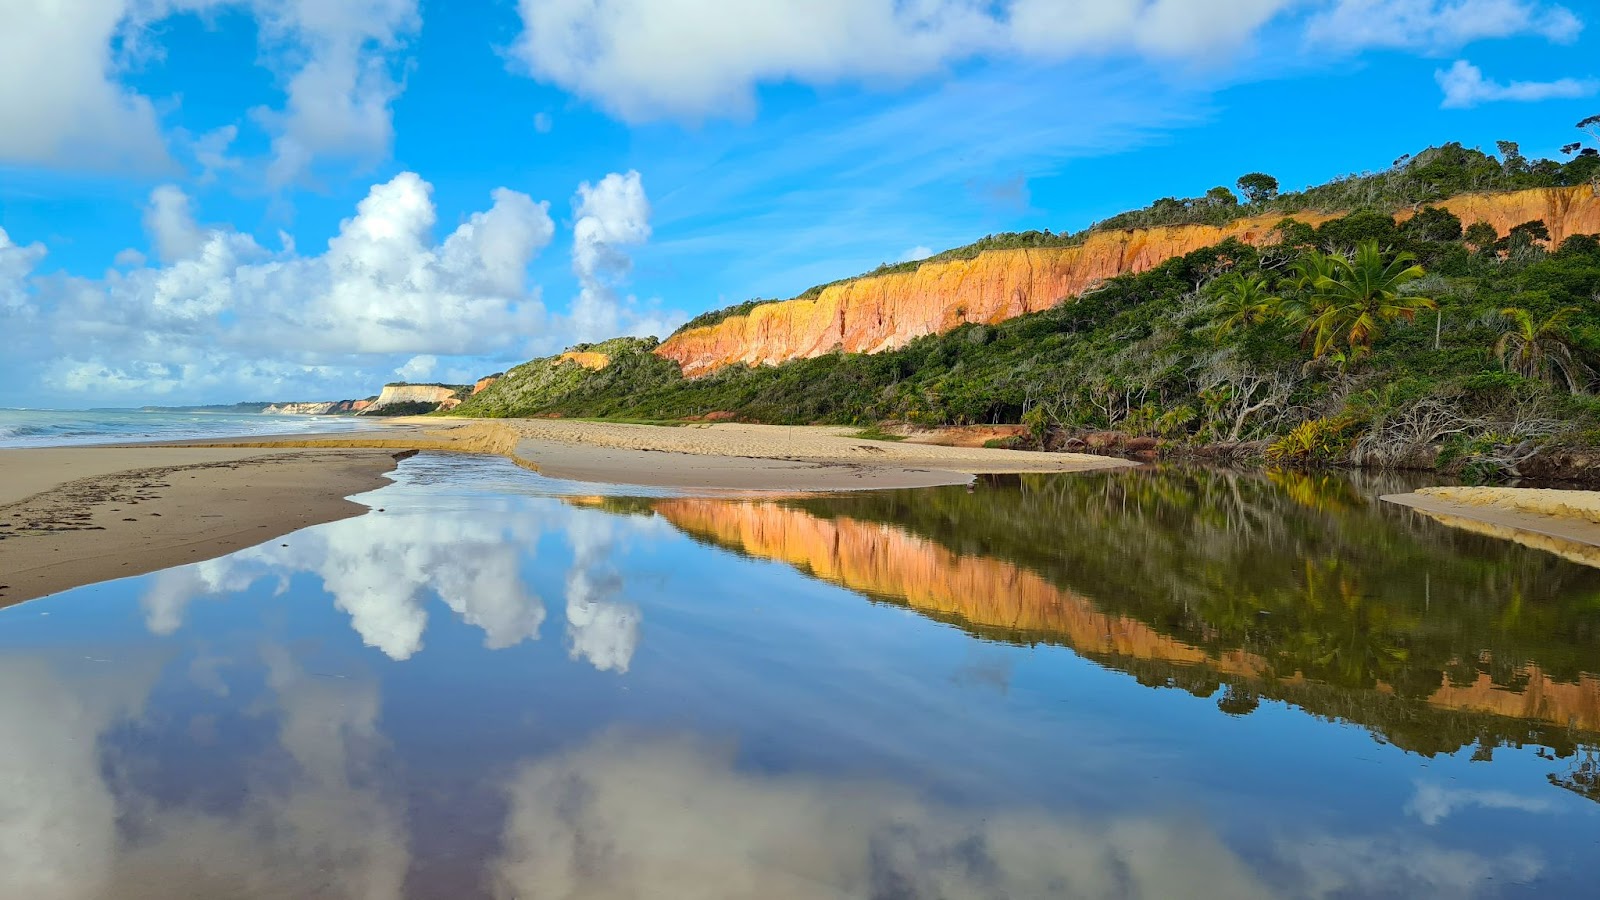 Piscina natural na areia da Praia da Pitinga refletindo o céu azul com nuvens brancos e a falésia coberta pela vegetação.